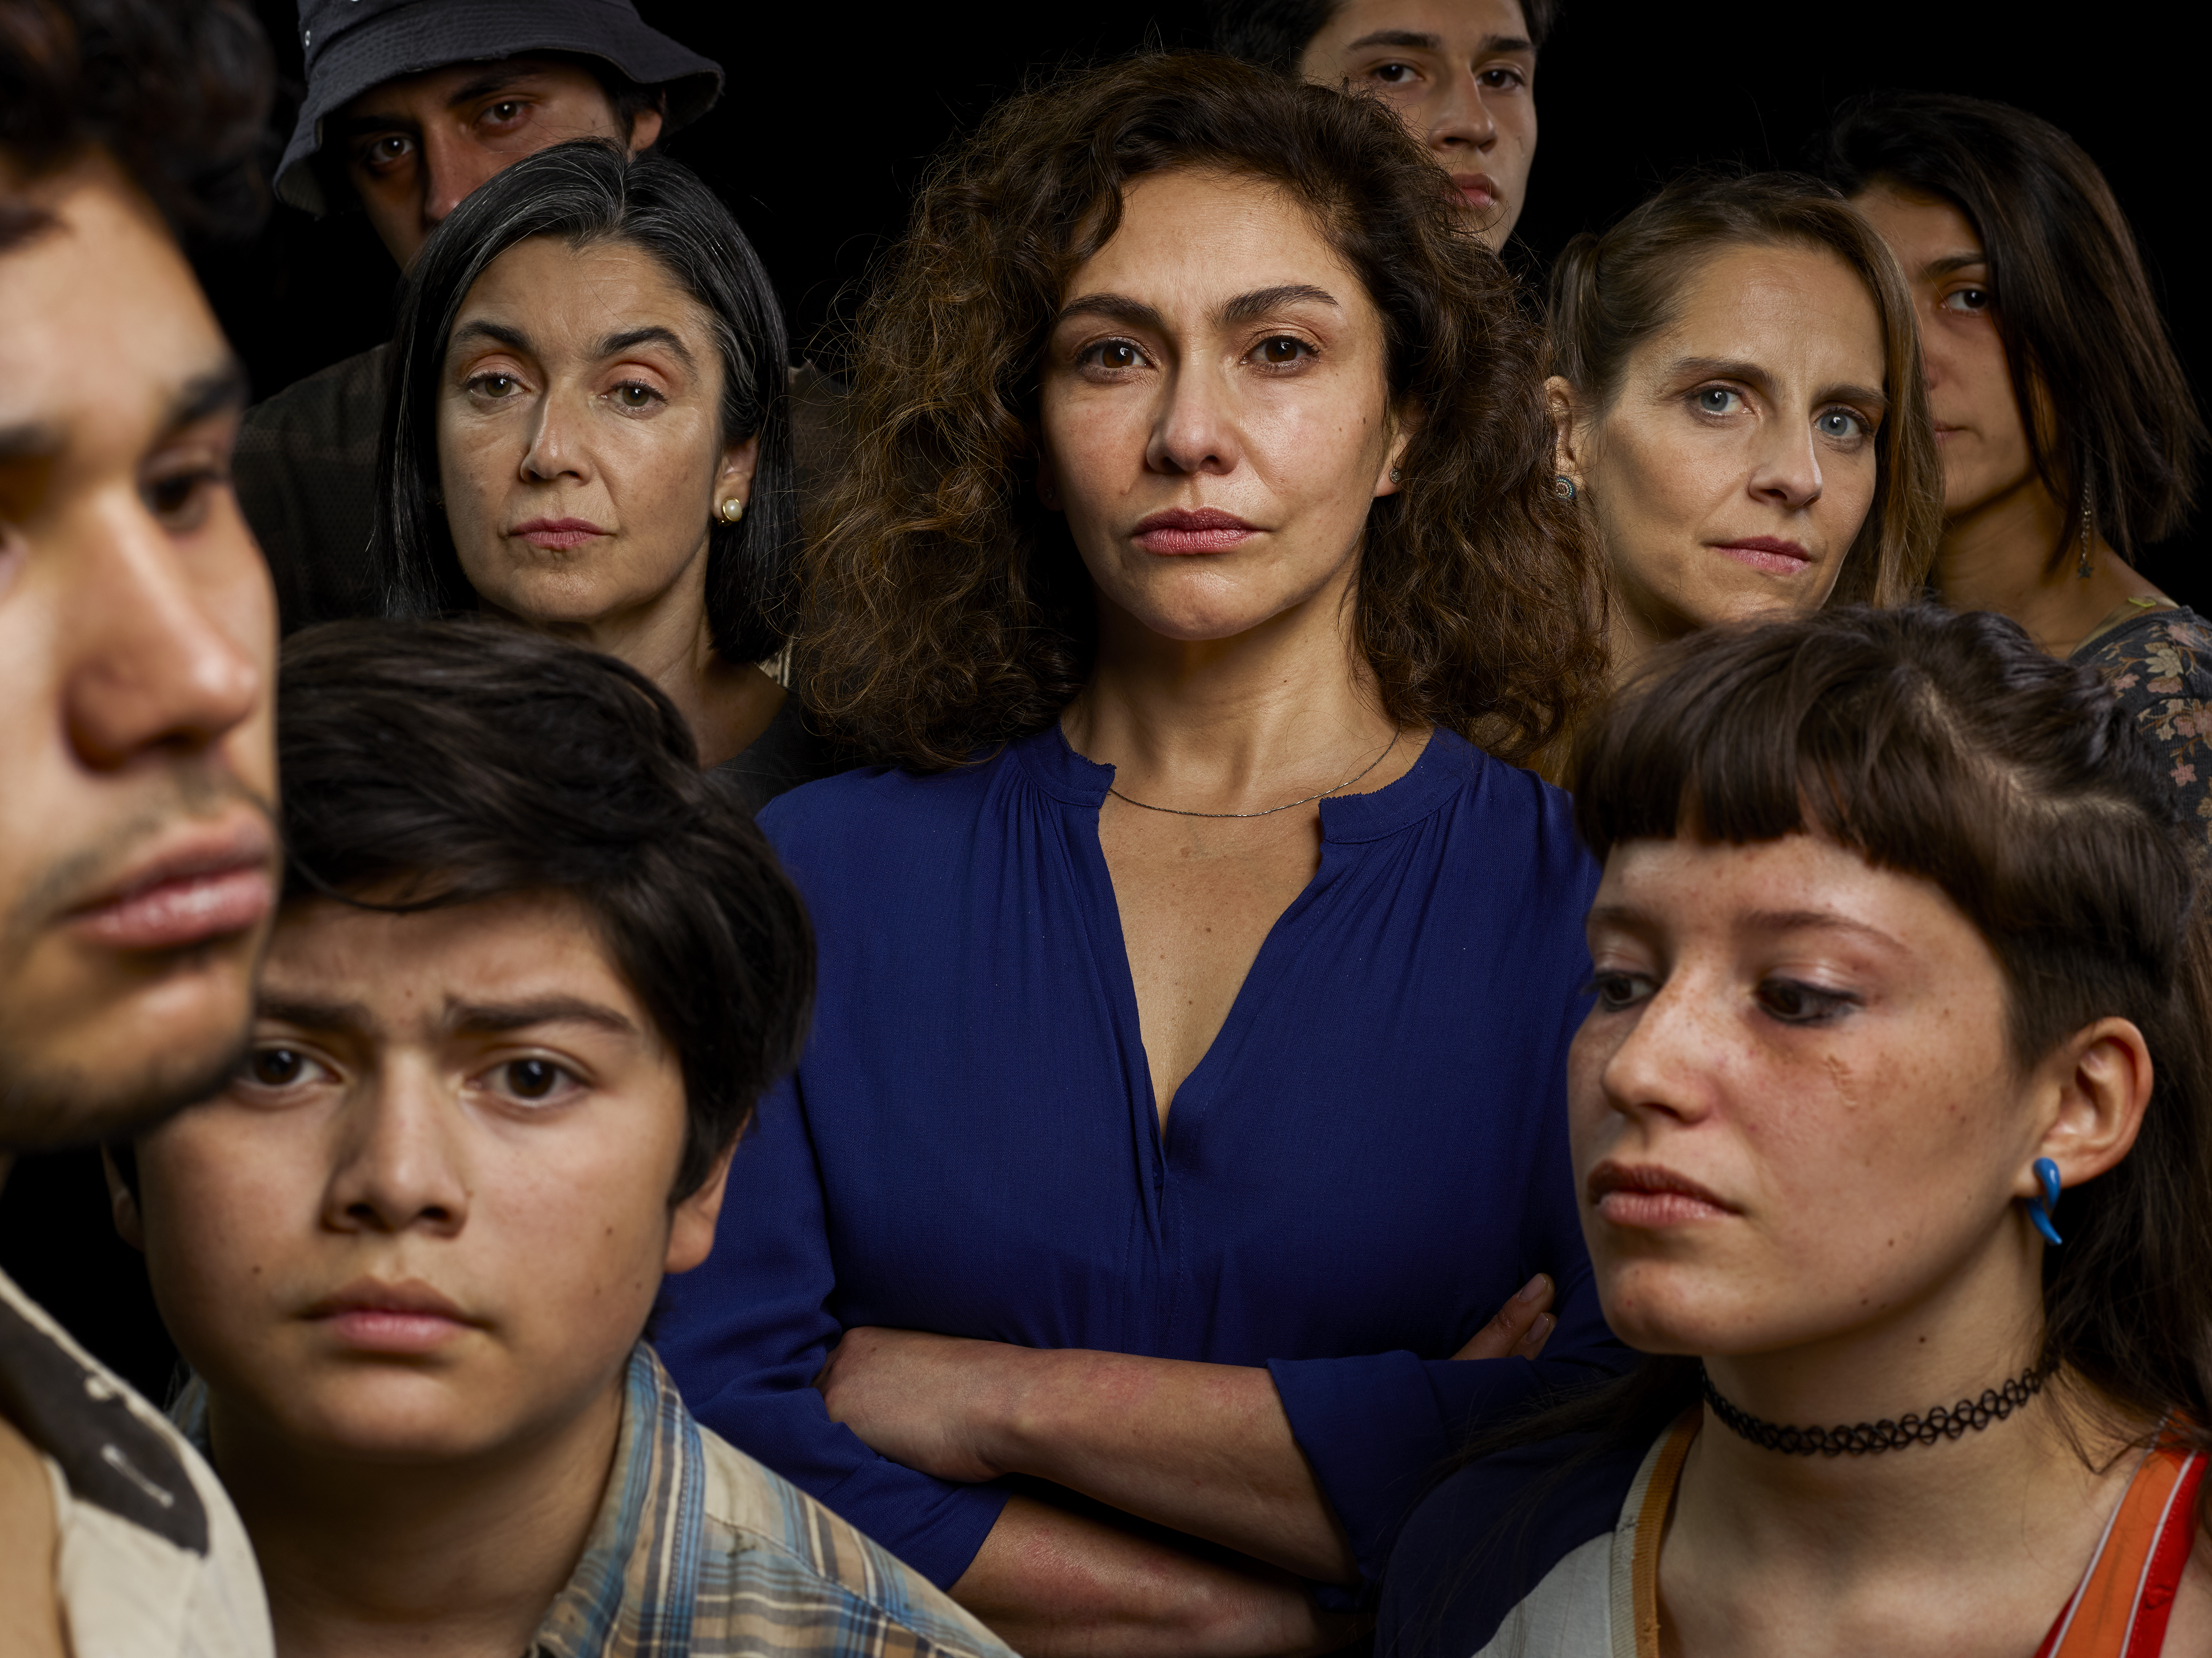 Todo sobre ‘No nos quieren ver’, la serie chilena de HBO Max basada en hechos reales